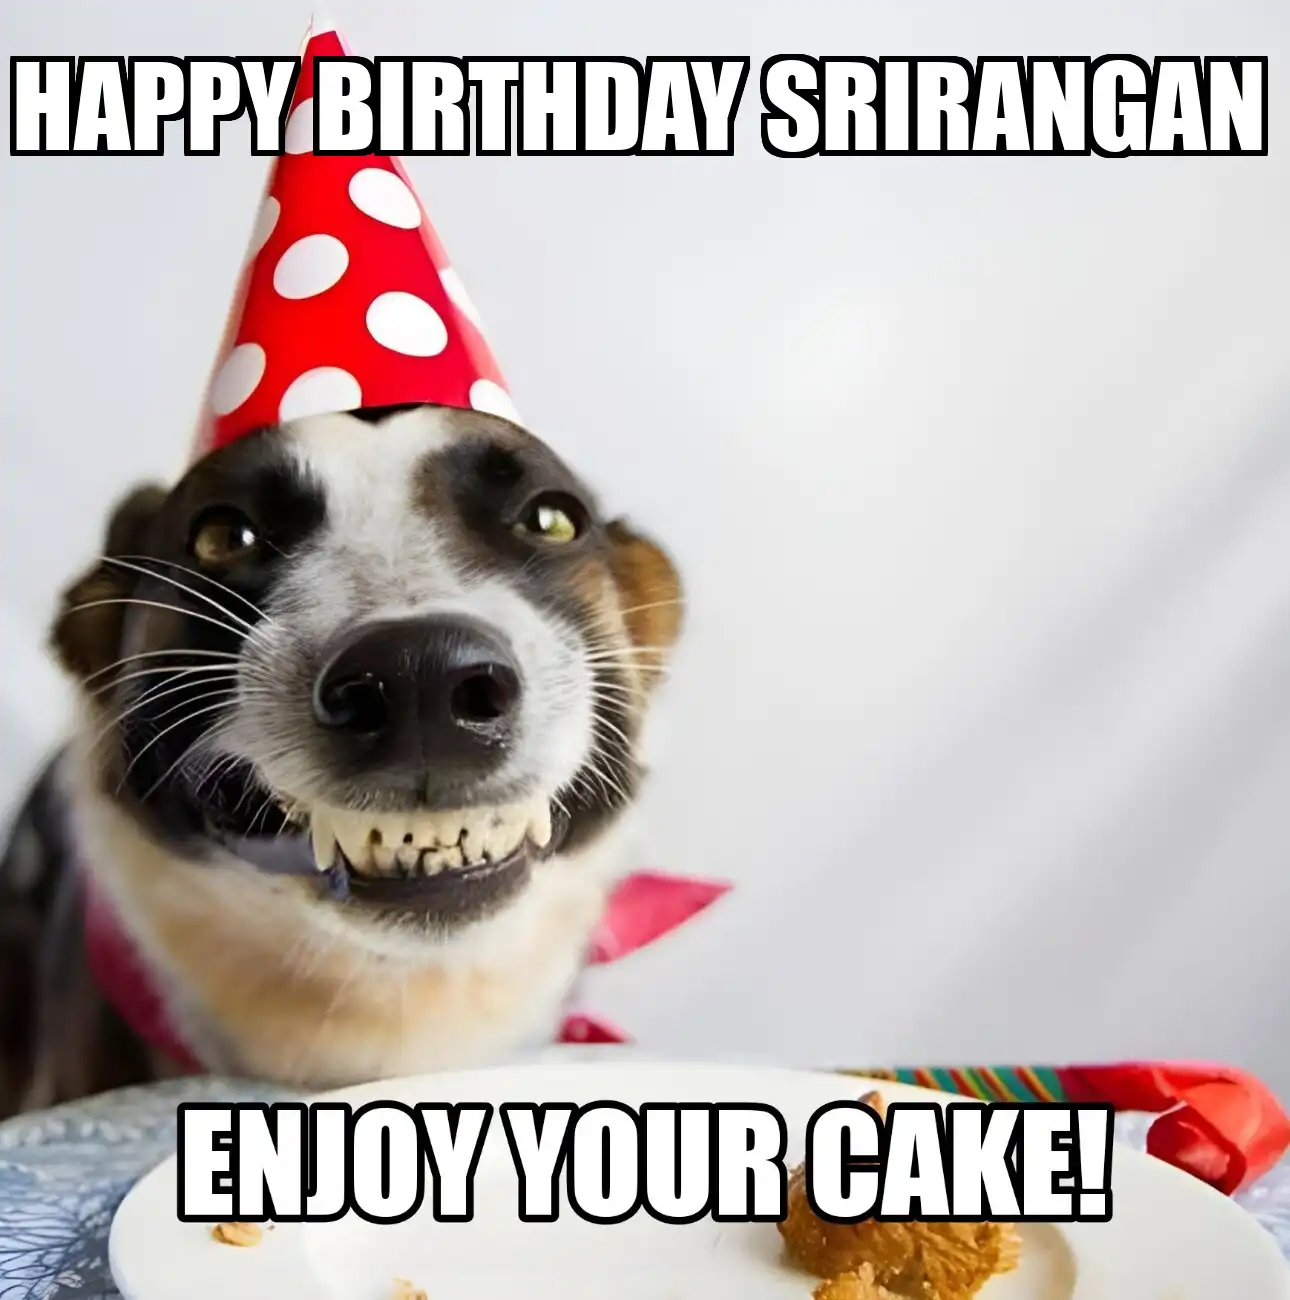 Happy Birthday Srirangan Enjoy Your Cake Dog Meme